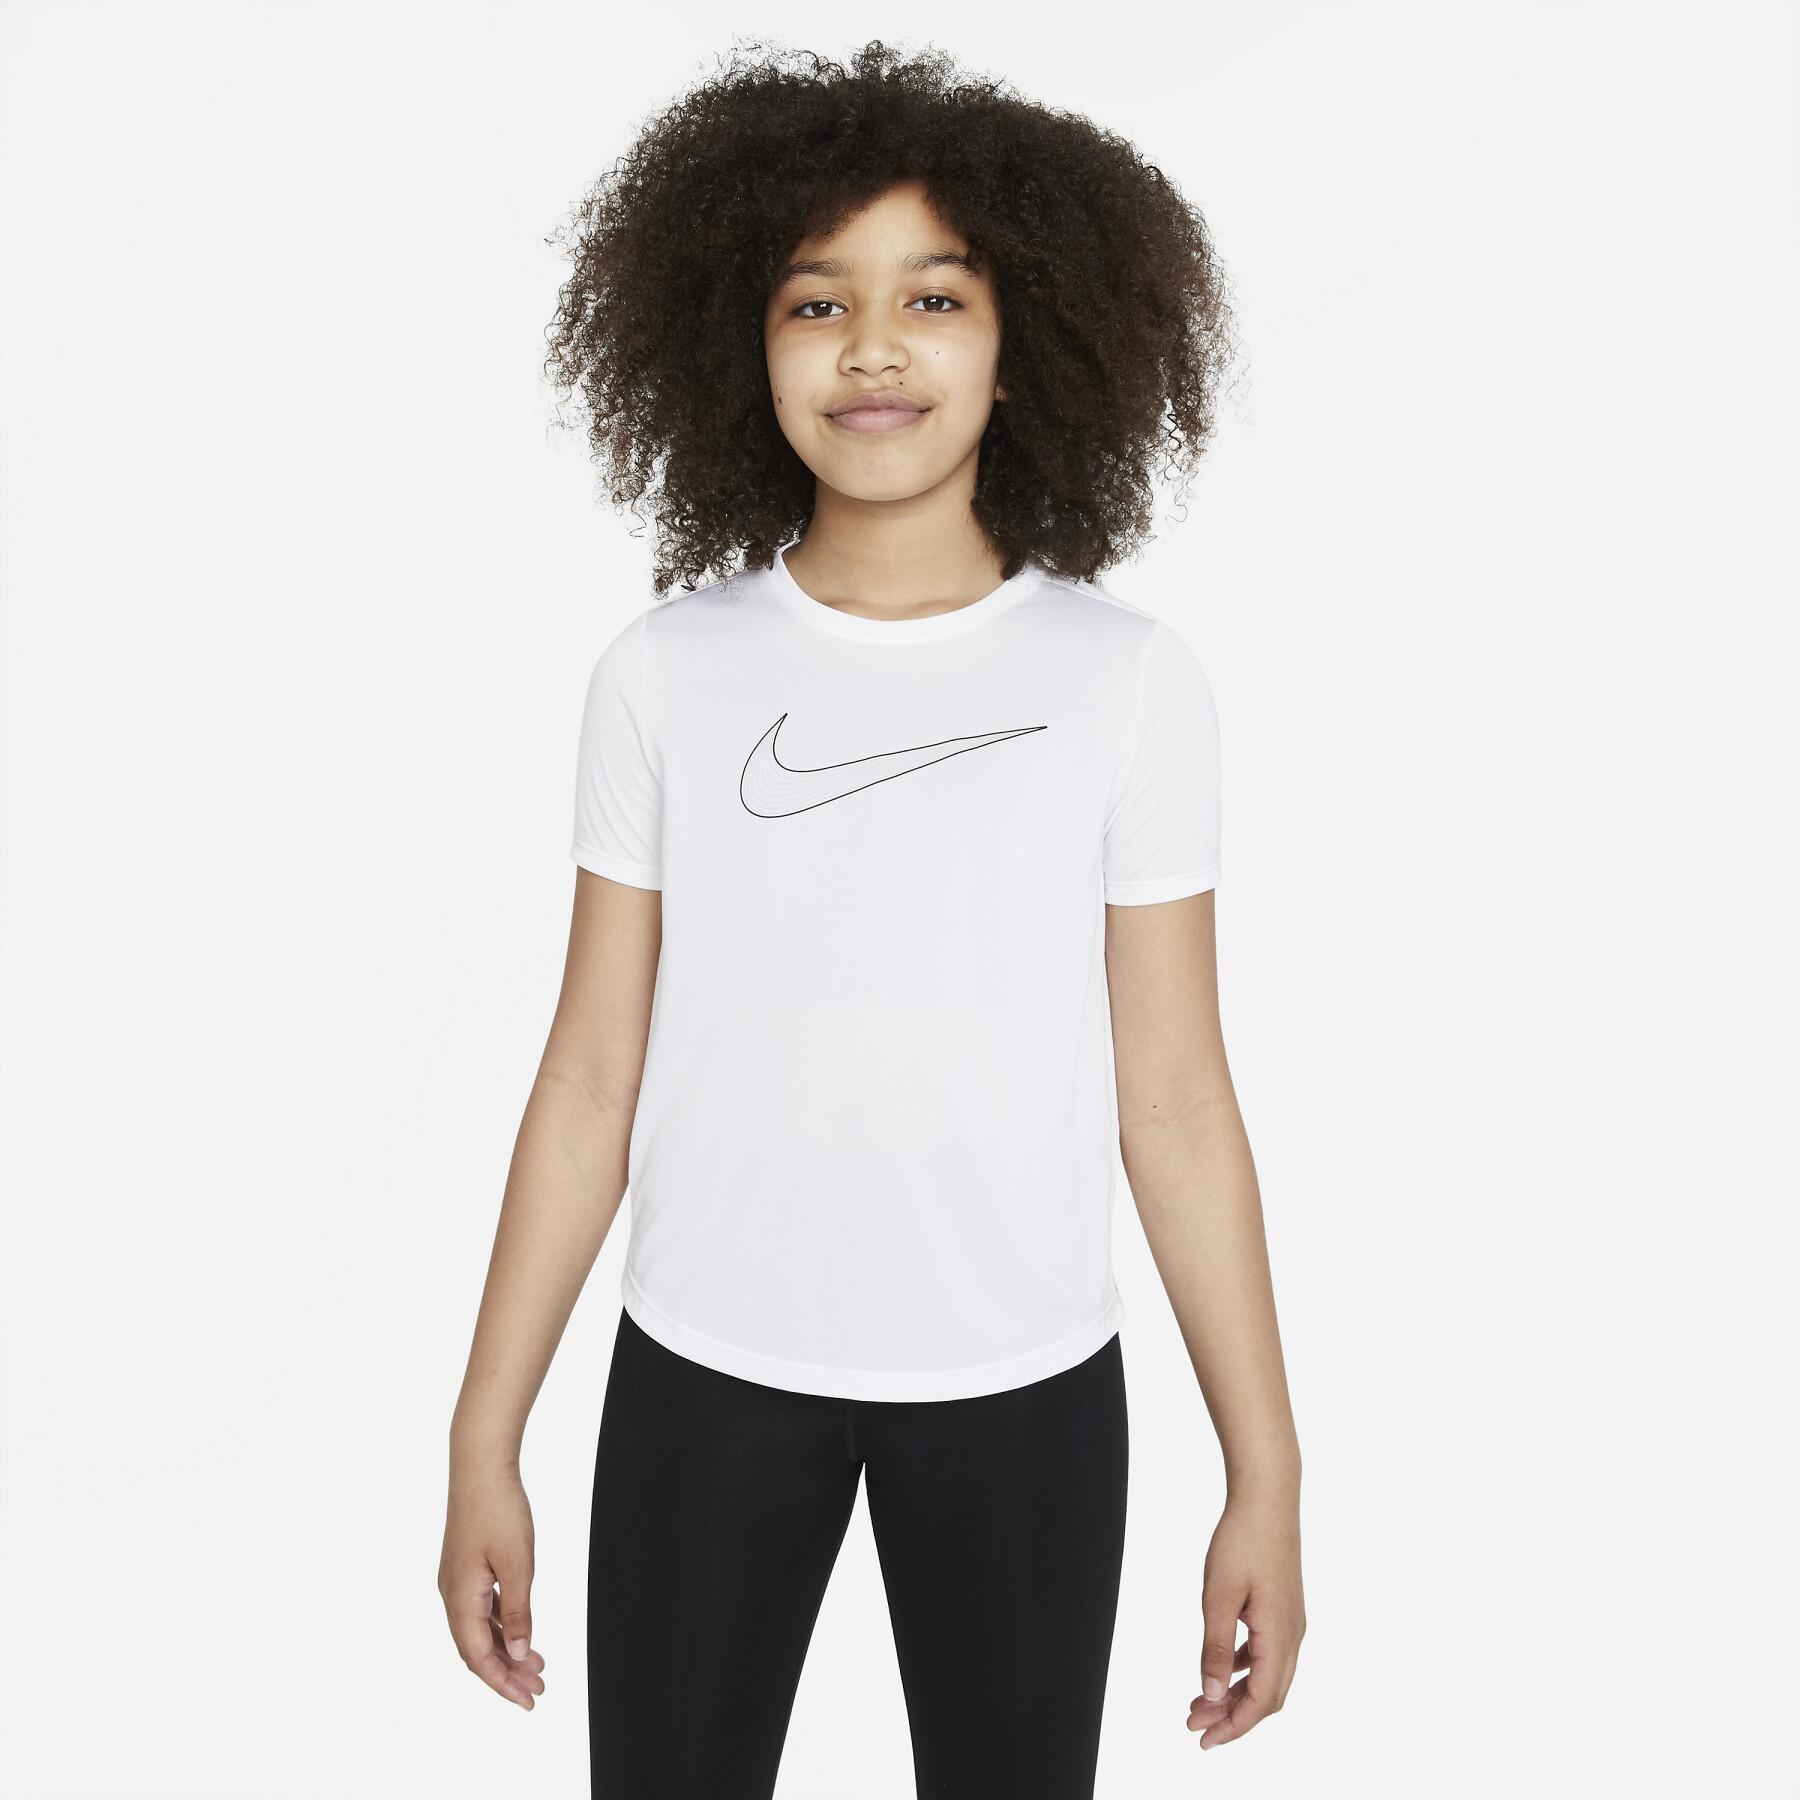 T-shirt de rapariga Nike One Gx